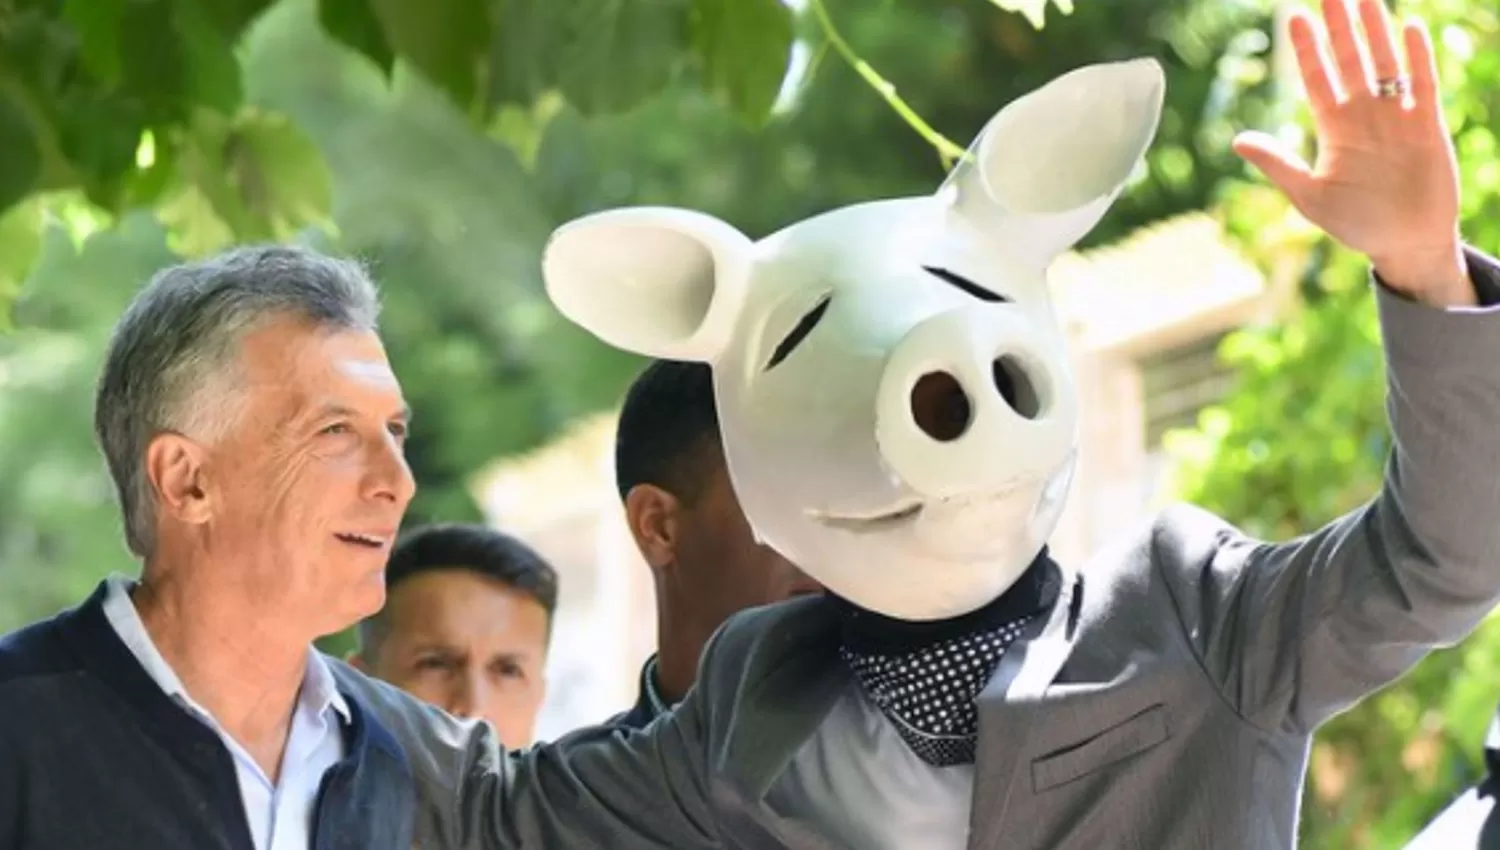 ACOMPAÑADO. El ex presidente Mauricio Macri posó junto a un hombre disfrazado de chancho.